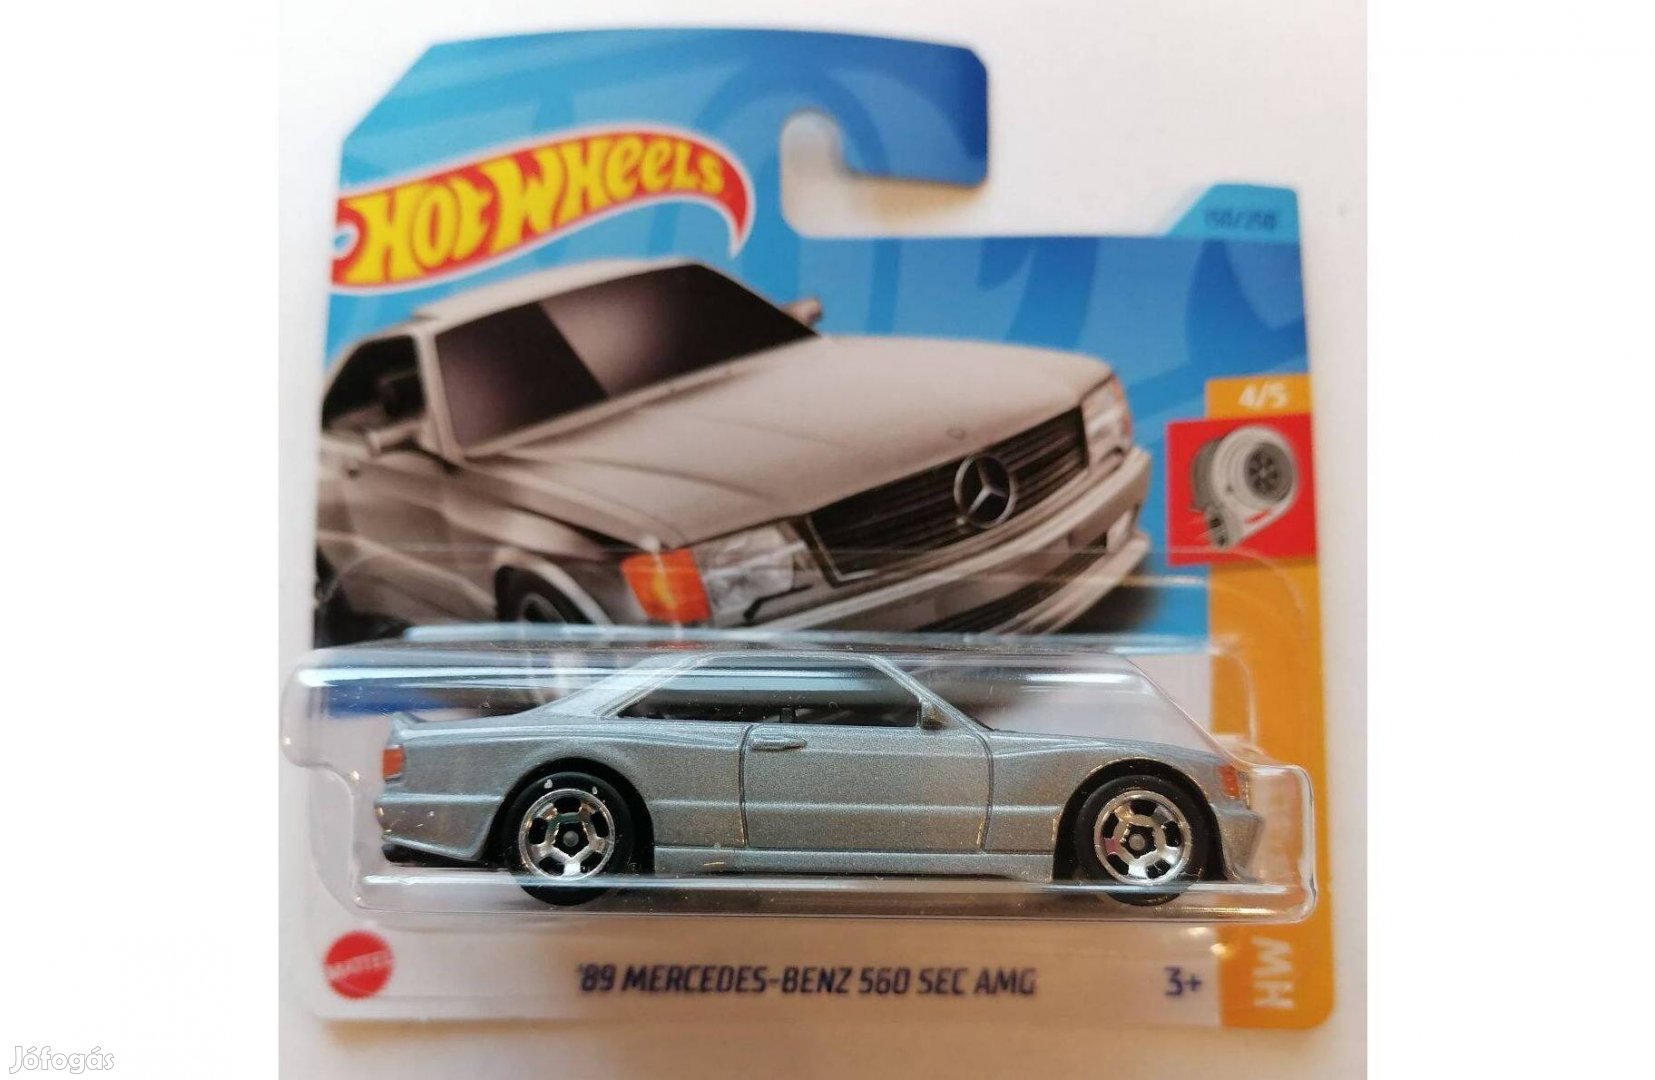 Hot Wheels '89 Mercedes Benz 560 SEC AMG ezüst